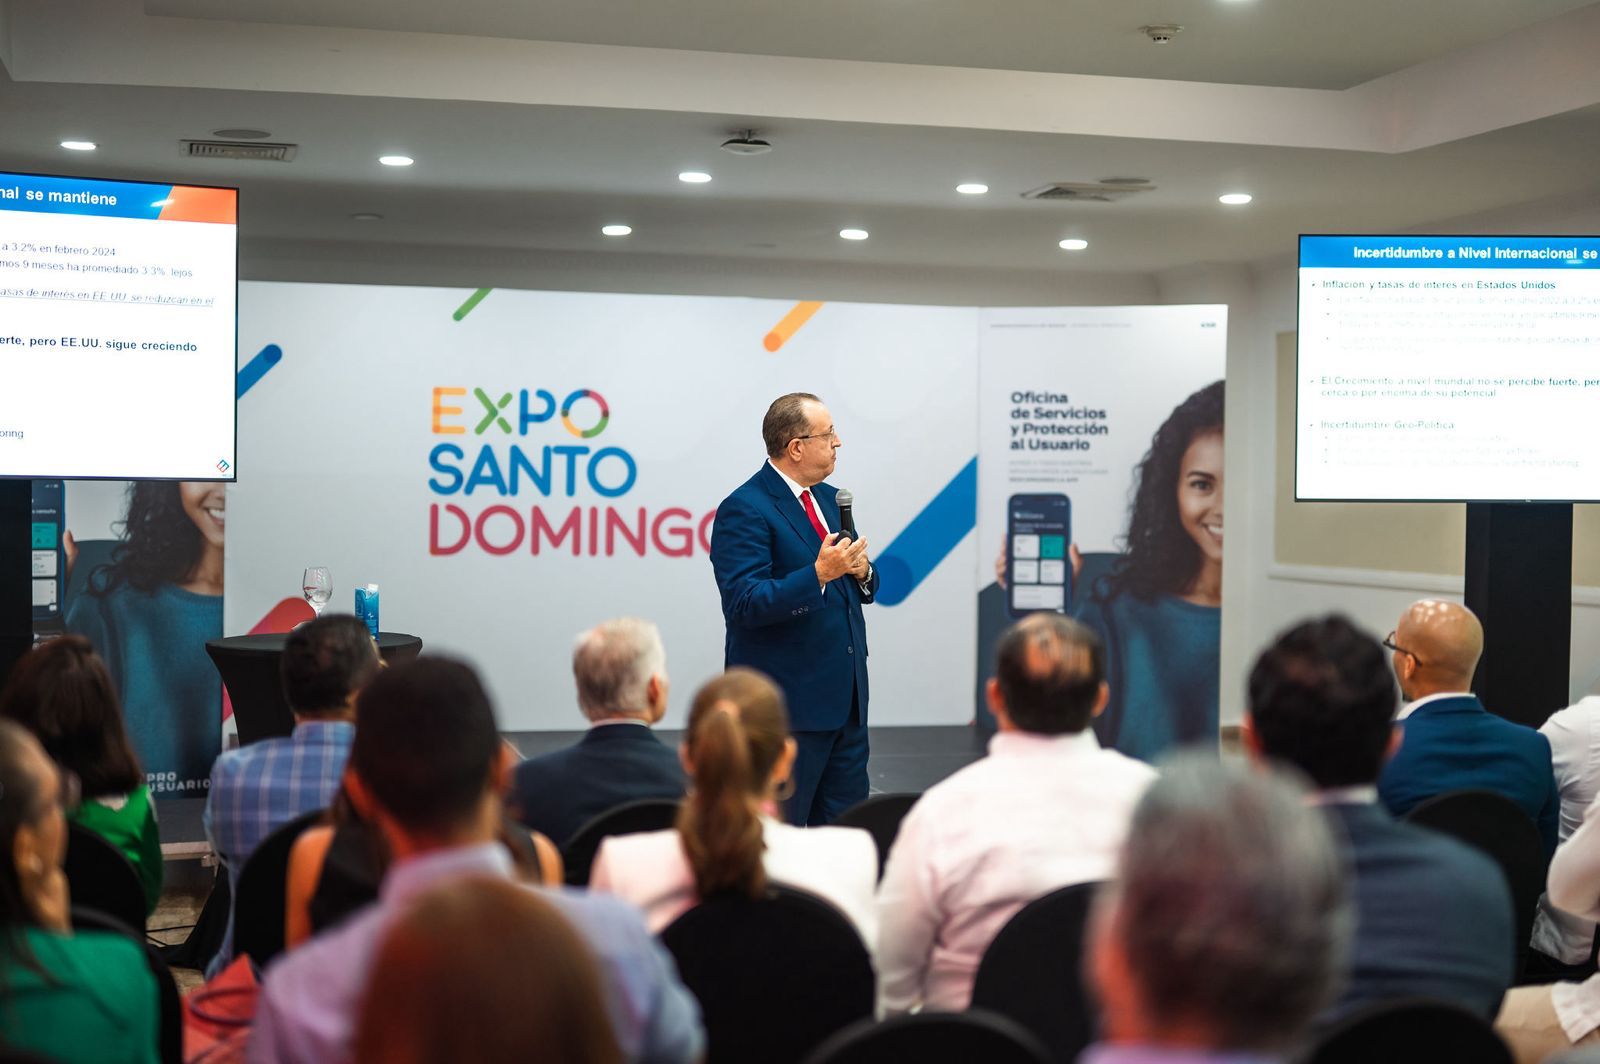 Expo Santo Domingo se lleva a cabo hasta este domingo 14 de abril de 2024, con el respaldo oficial de la Asociación Nacional de Empresas e Industrias Herrera (ANEIH). Foto: Fuente externa